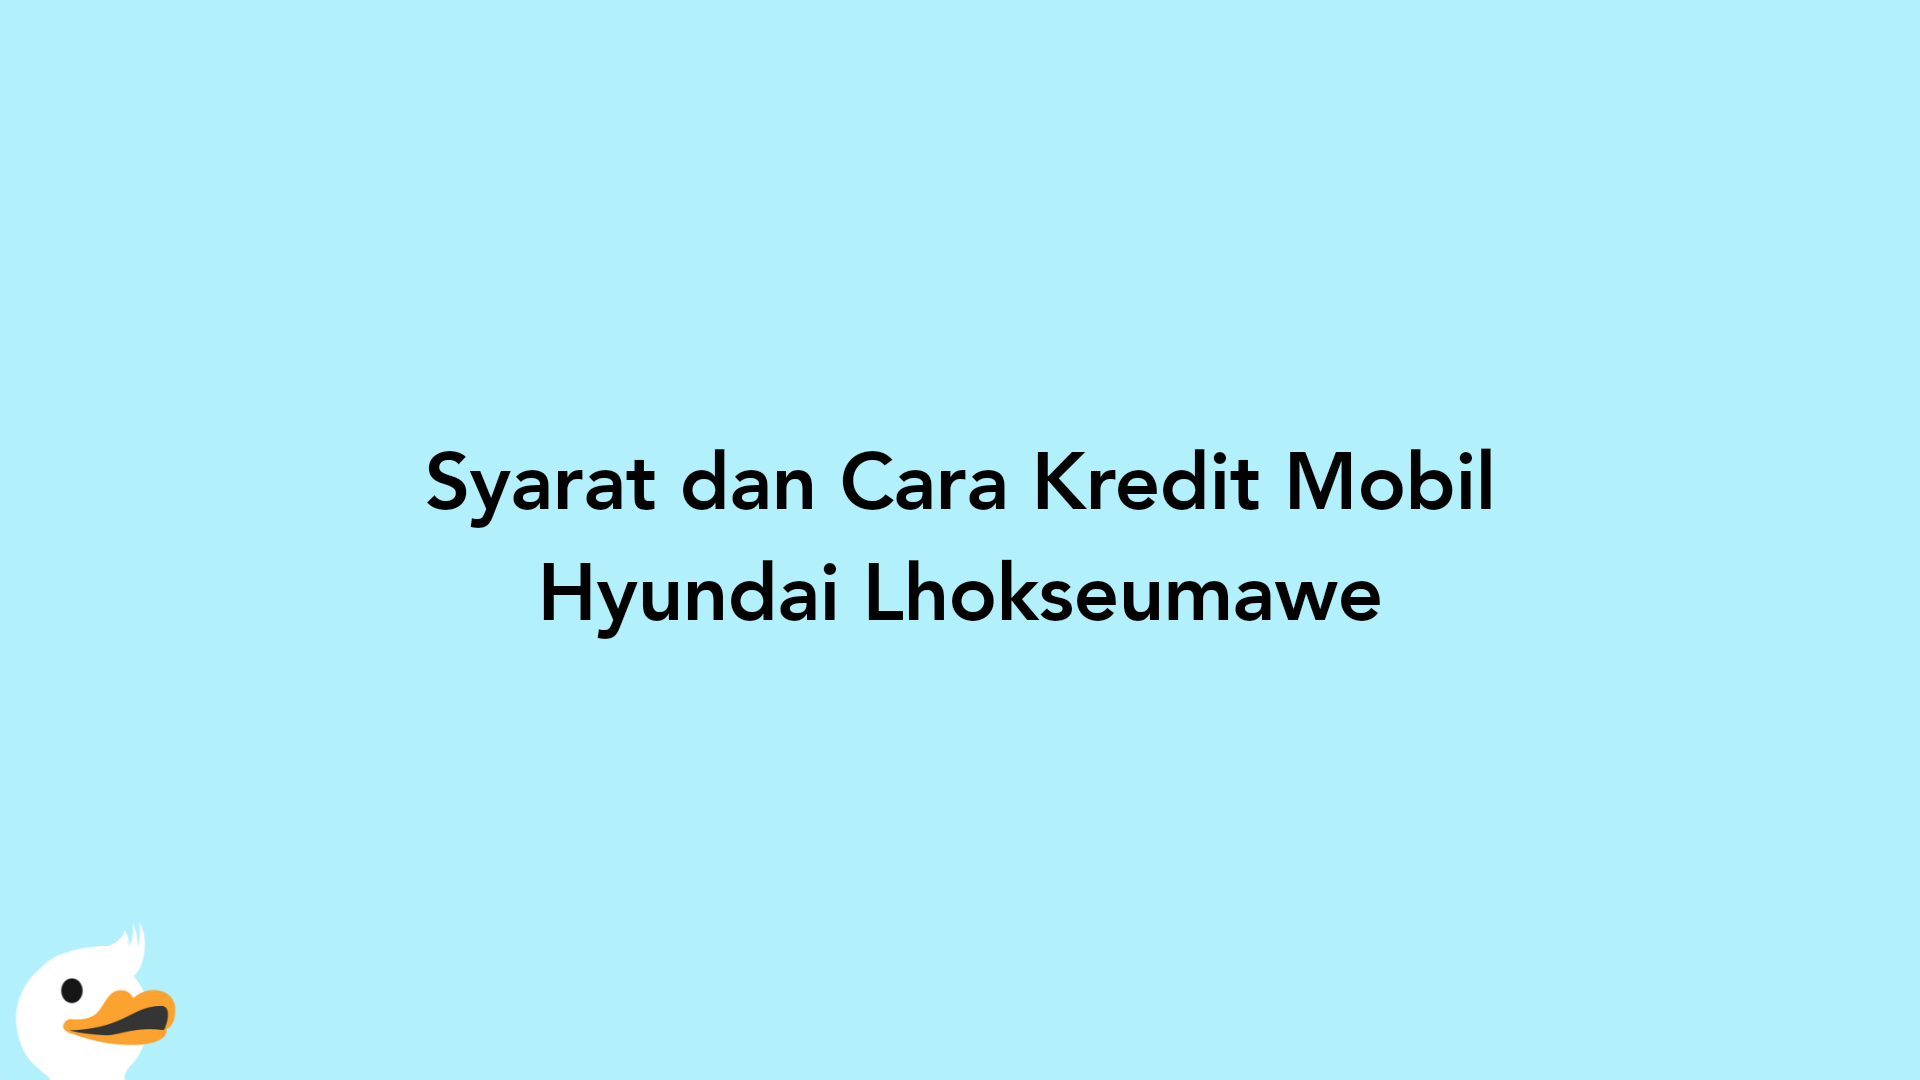 Syarat dan Cara Kredit Mobil Hyundai Lhokseumawe